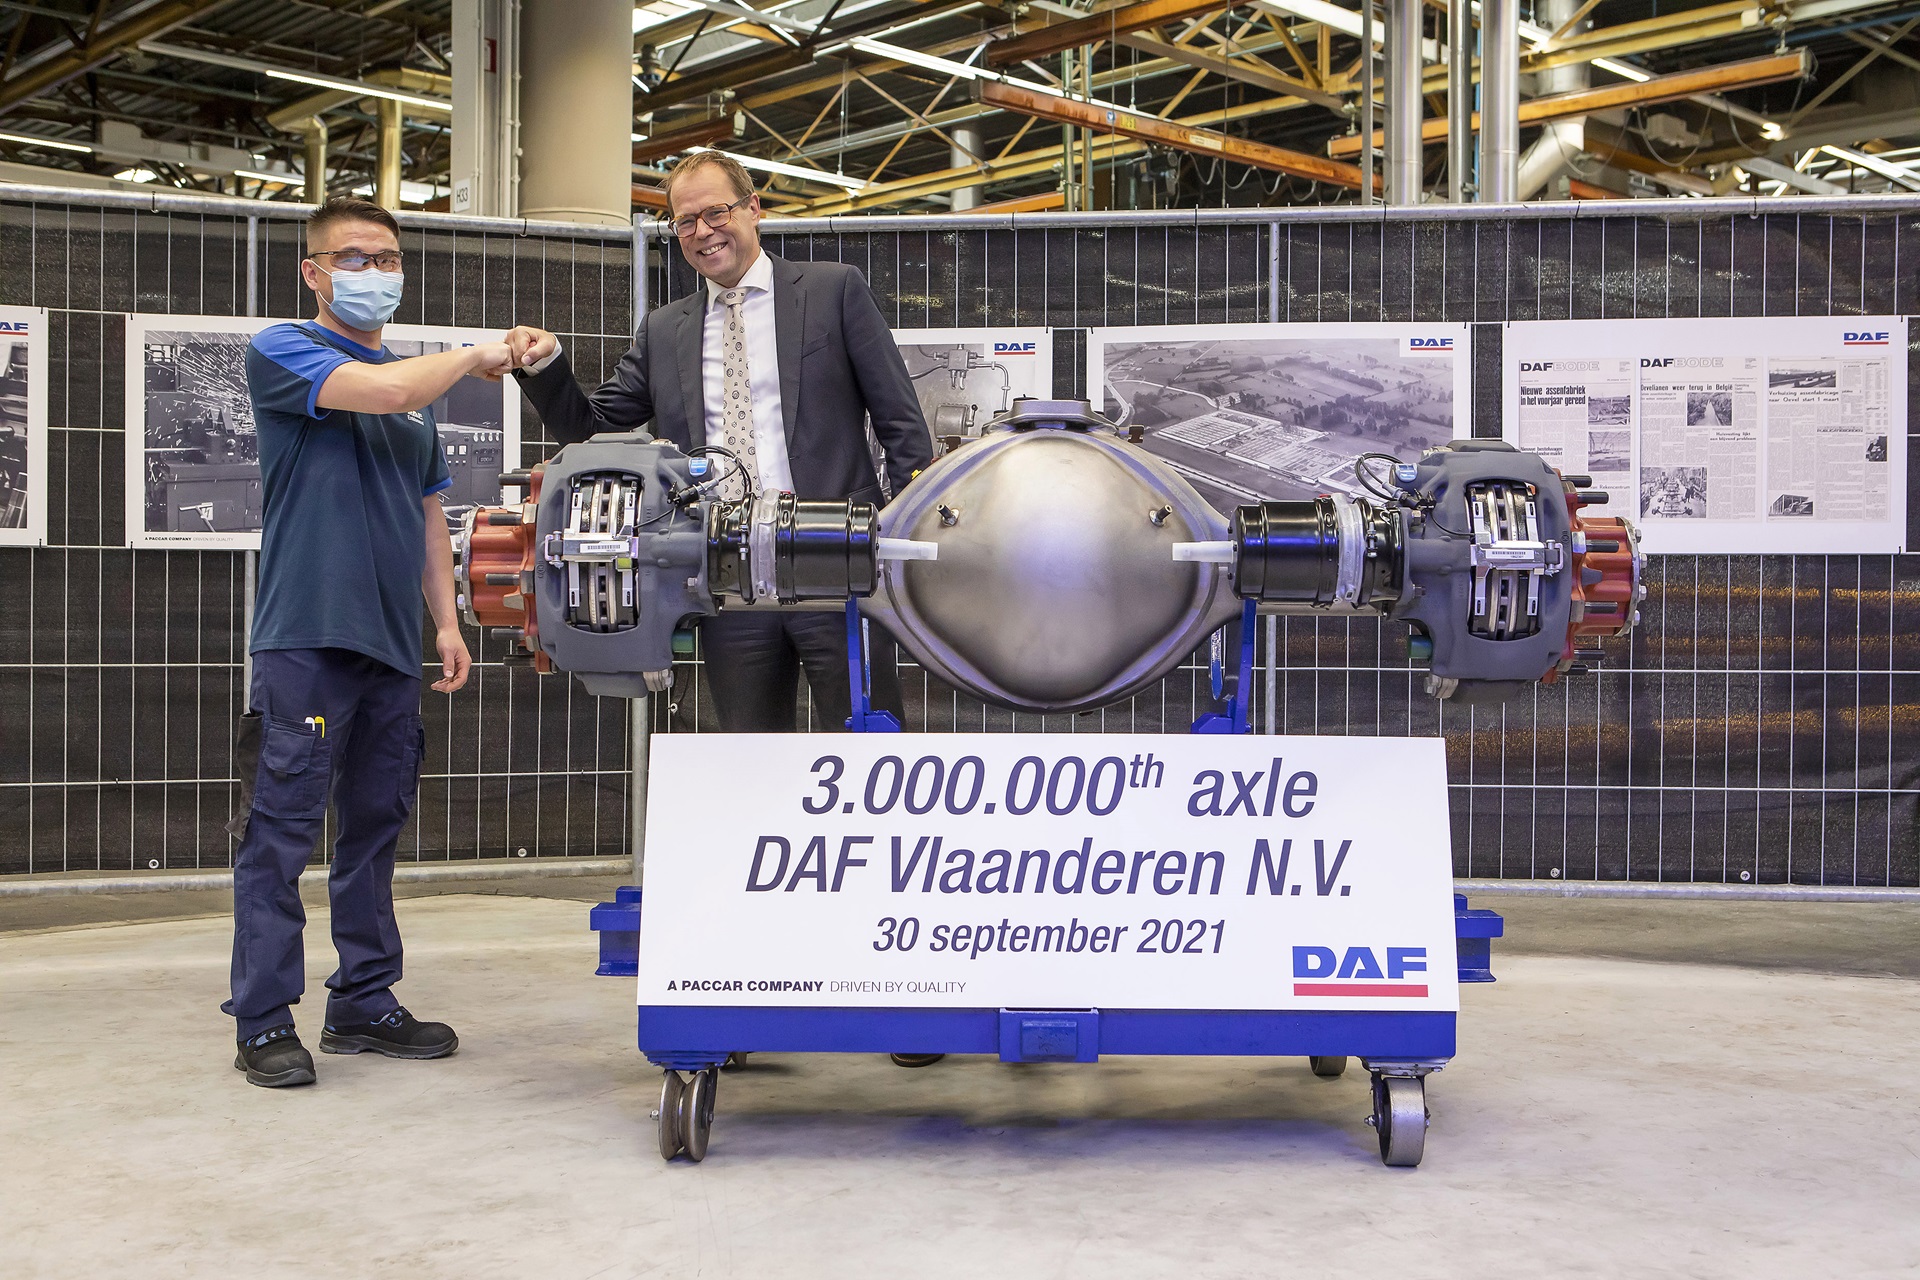 DAF-Trucks-Flanders-3000000-axles-in-50-years